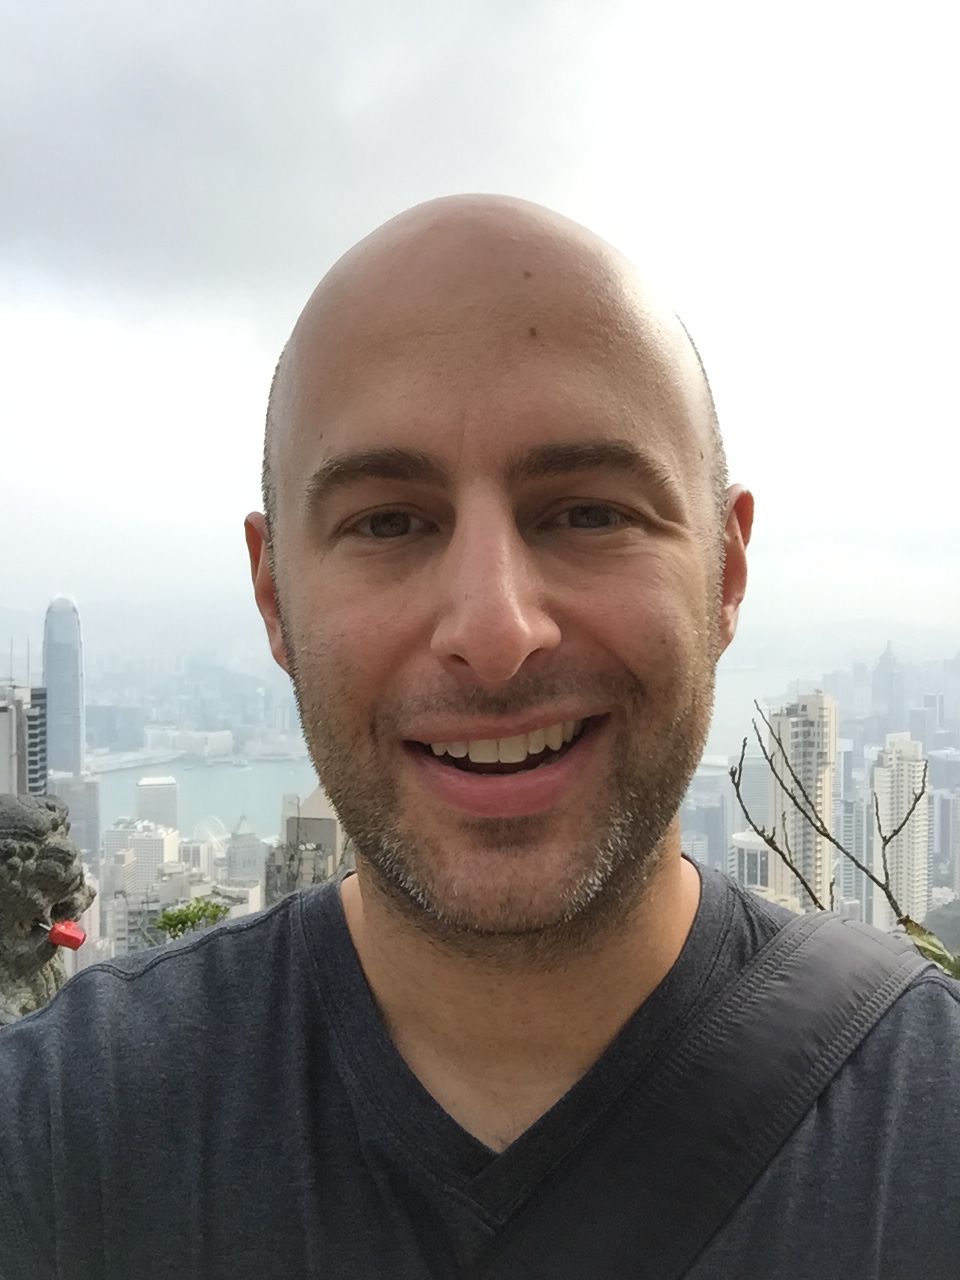 Hong Kong Victoria Peak Selfie